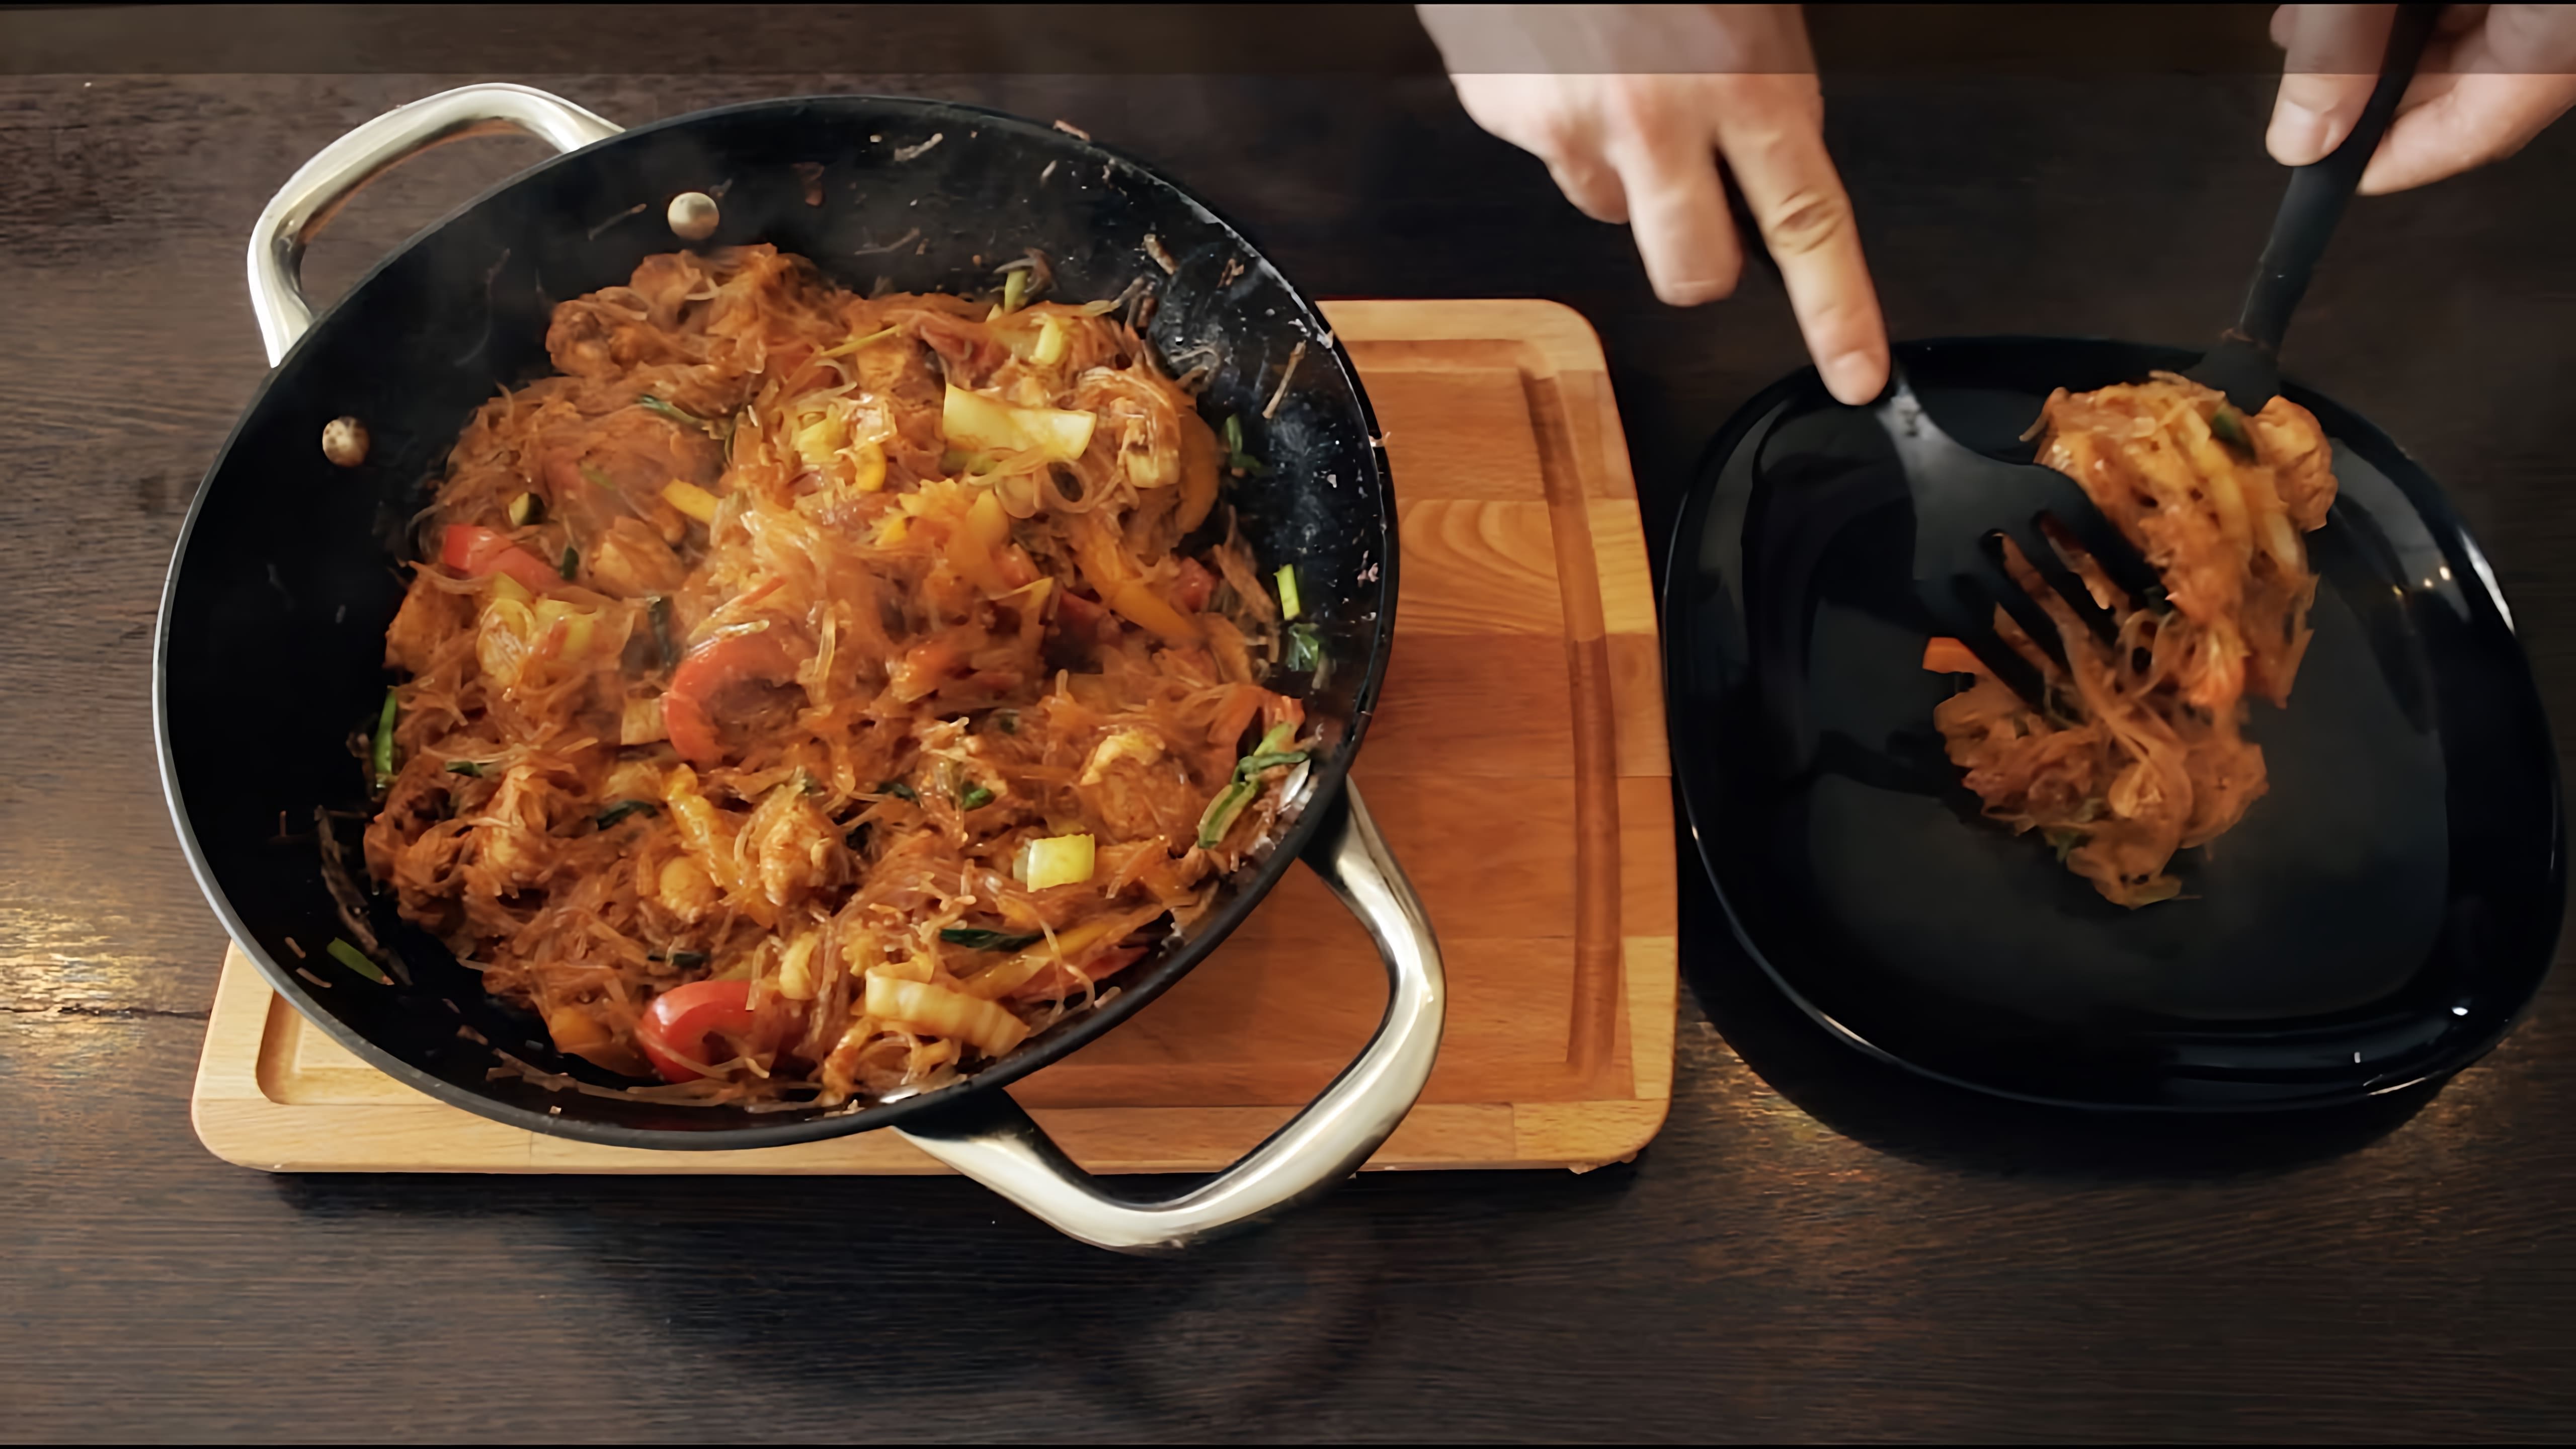 В этом видео демонстрируется рецепт приготовления вкусного блюда - лапши вок с мясом и овощами